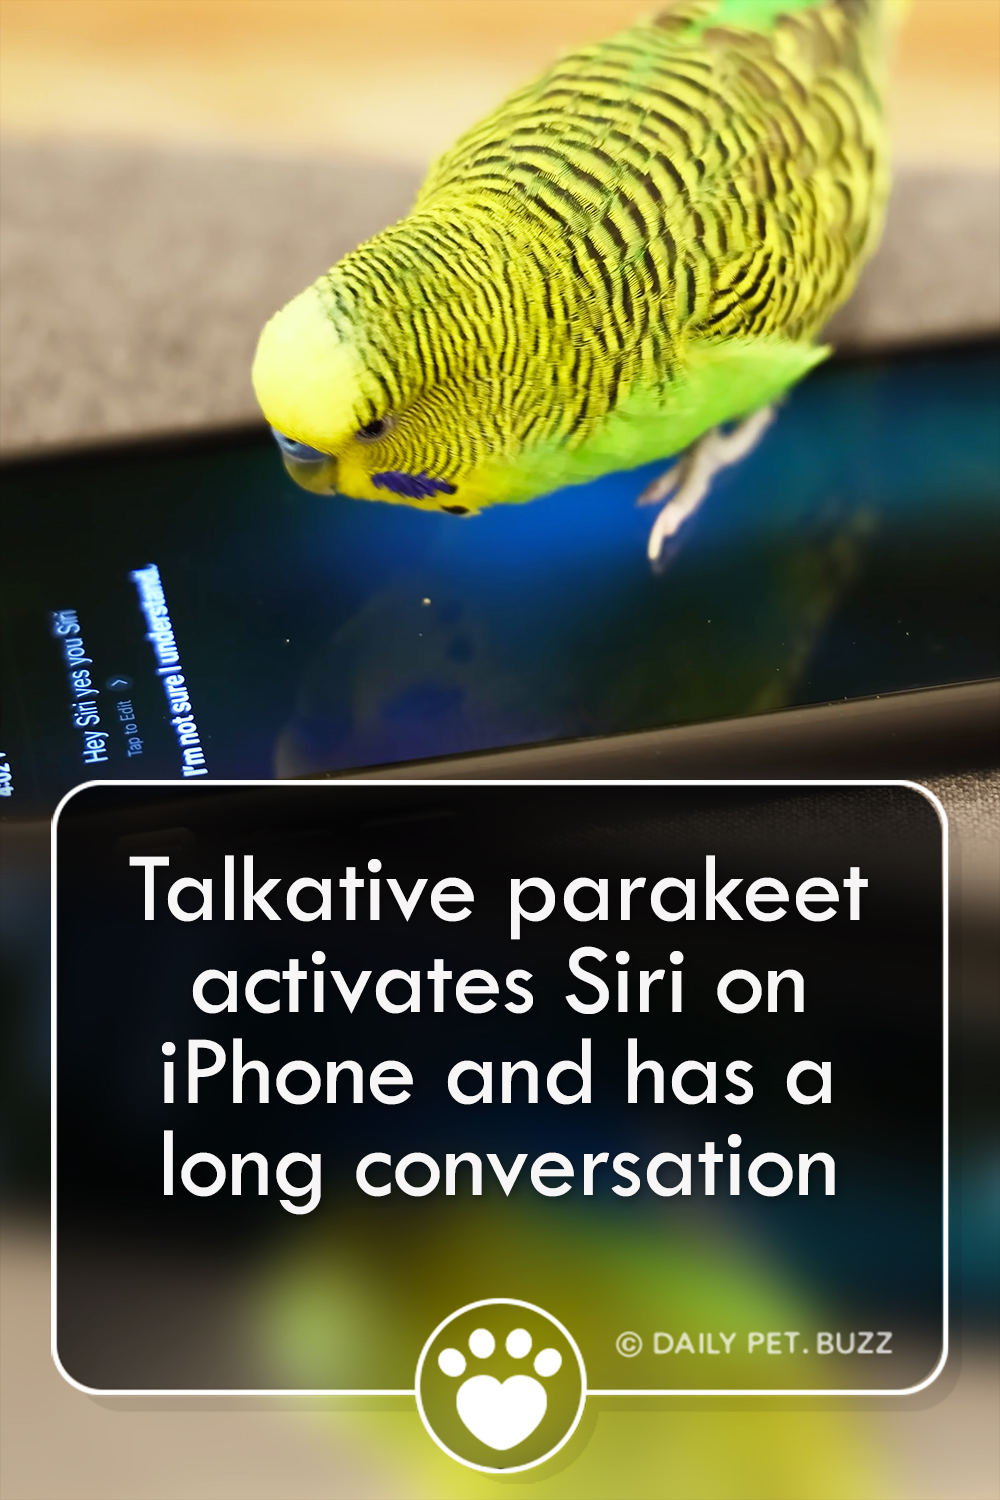 Talkative parakeet activates Siri on iPhone and has a long conversation